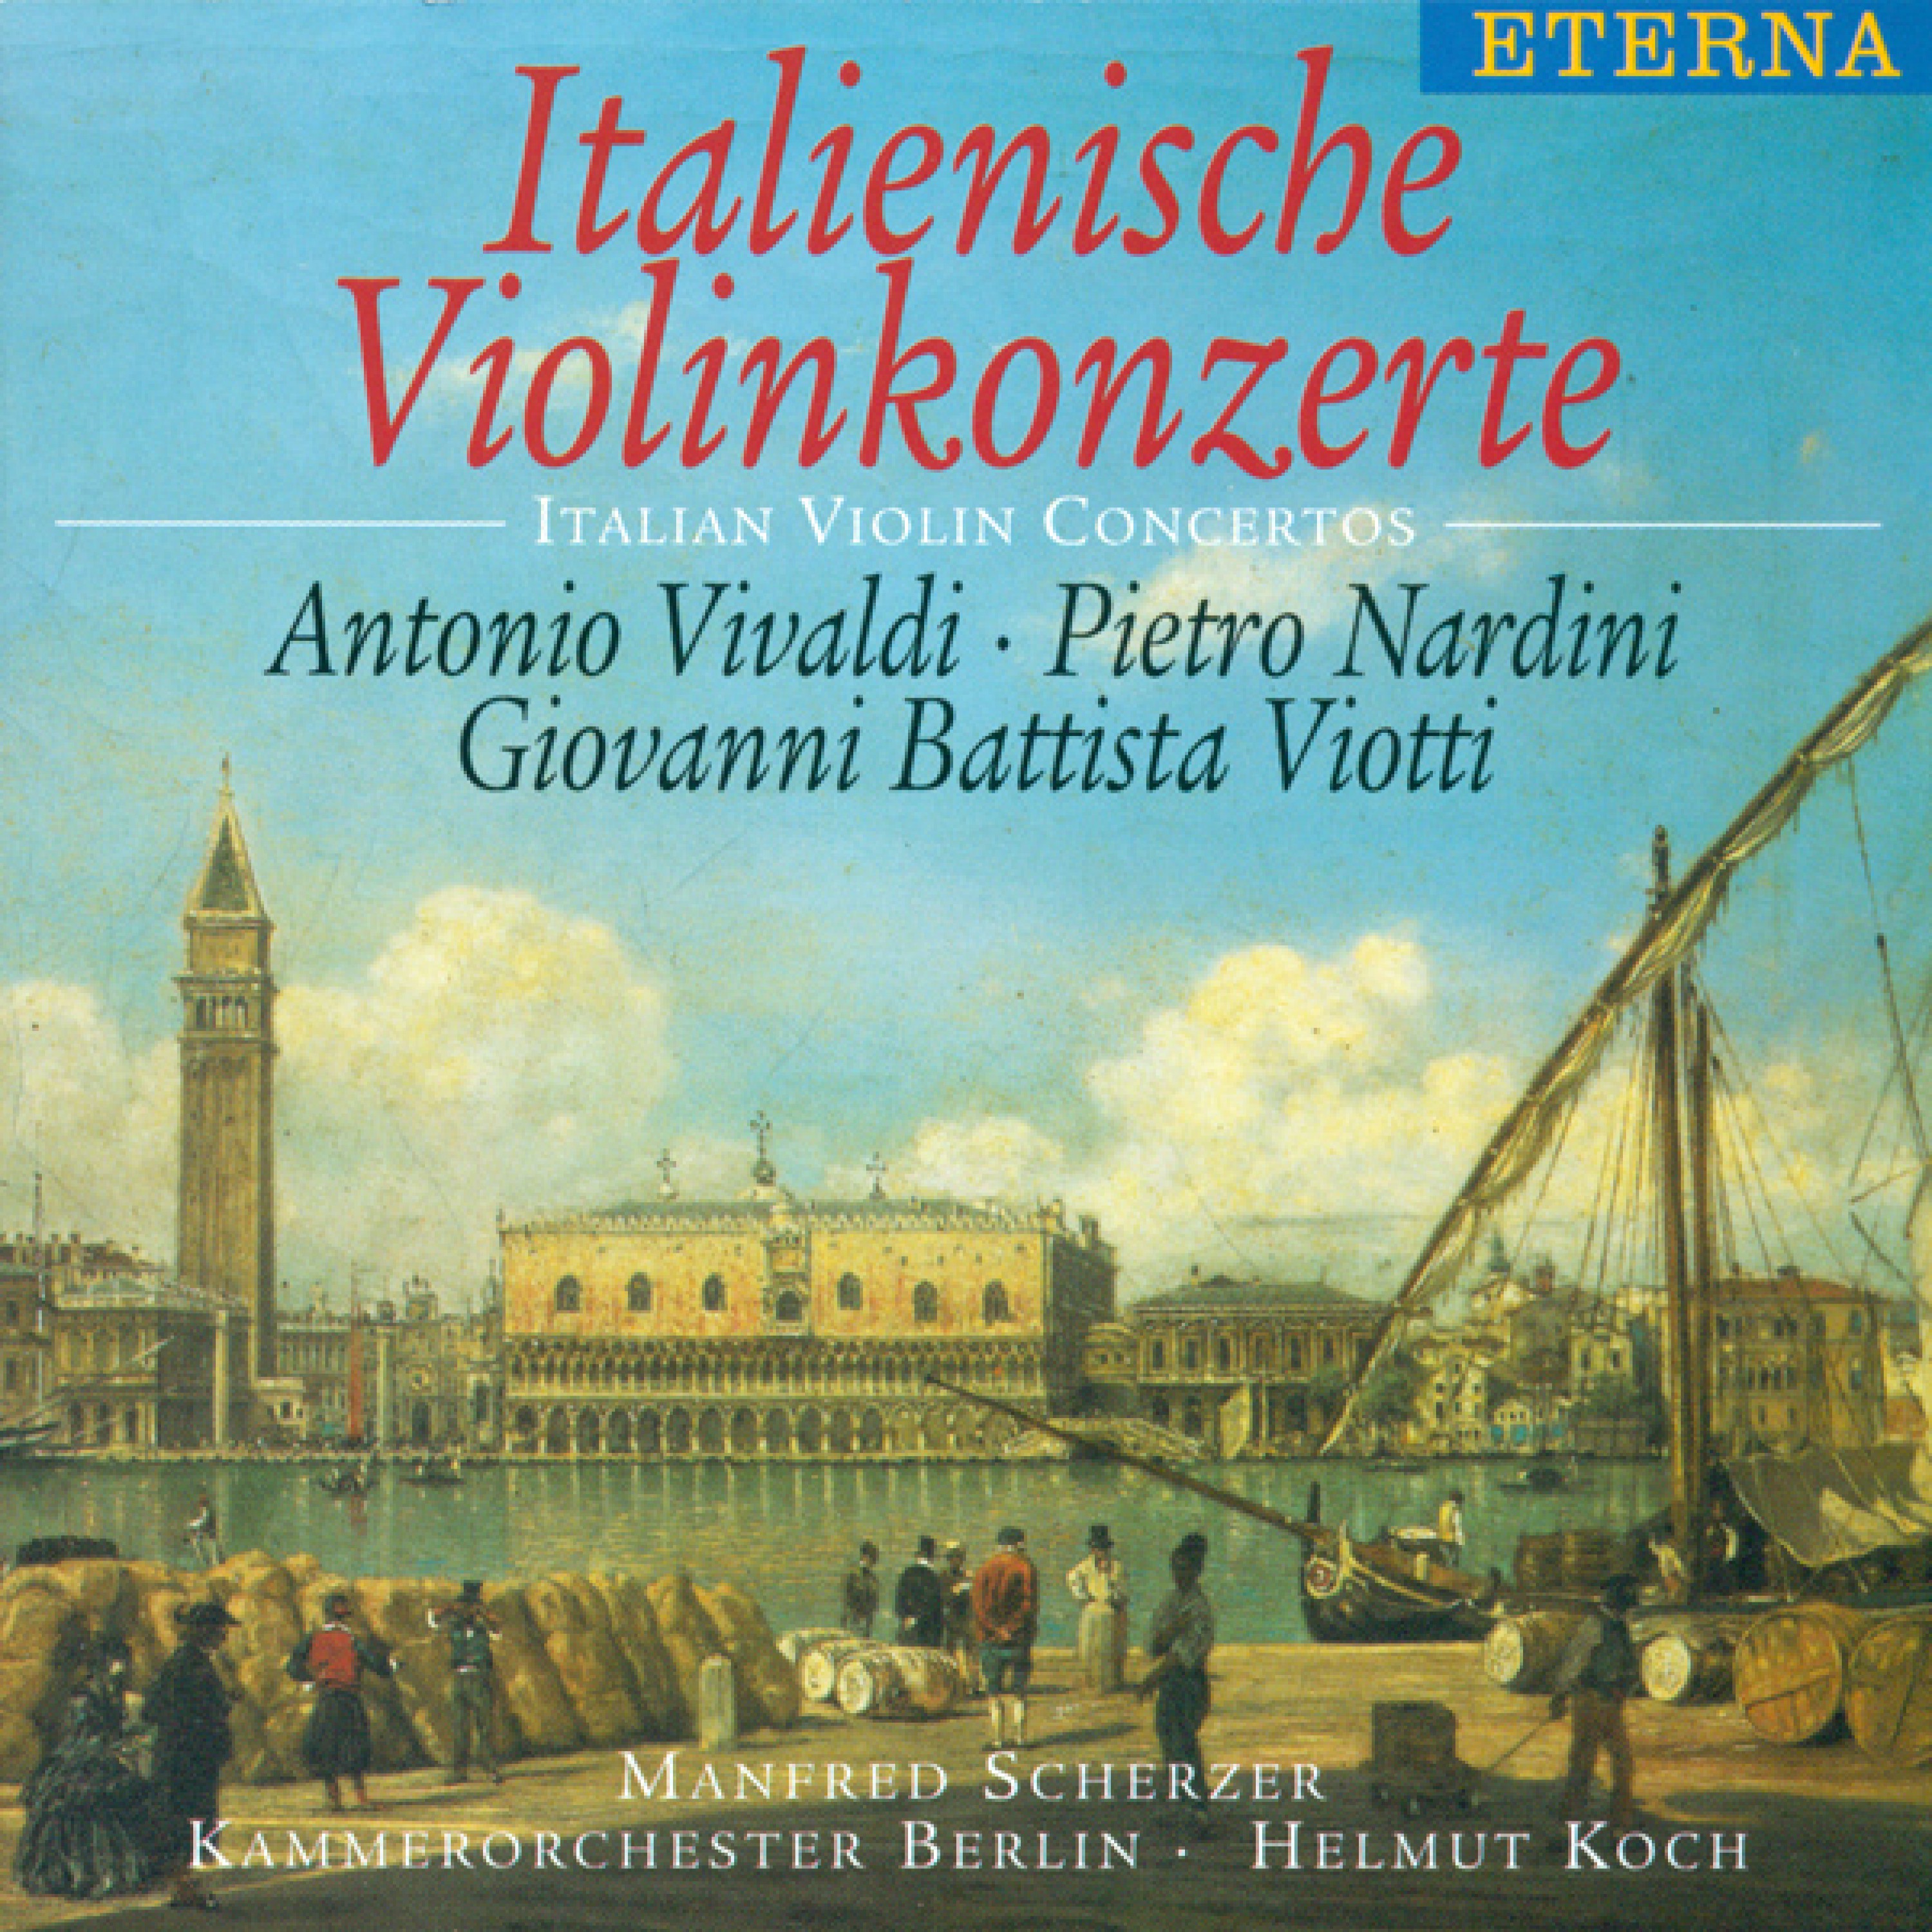 Violin Concerto in E Minor: III. Allegro giocoso